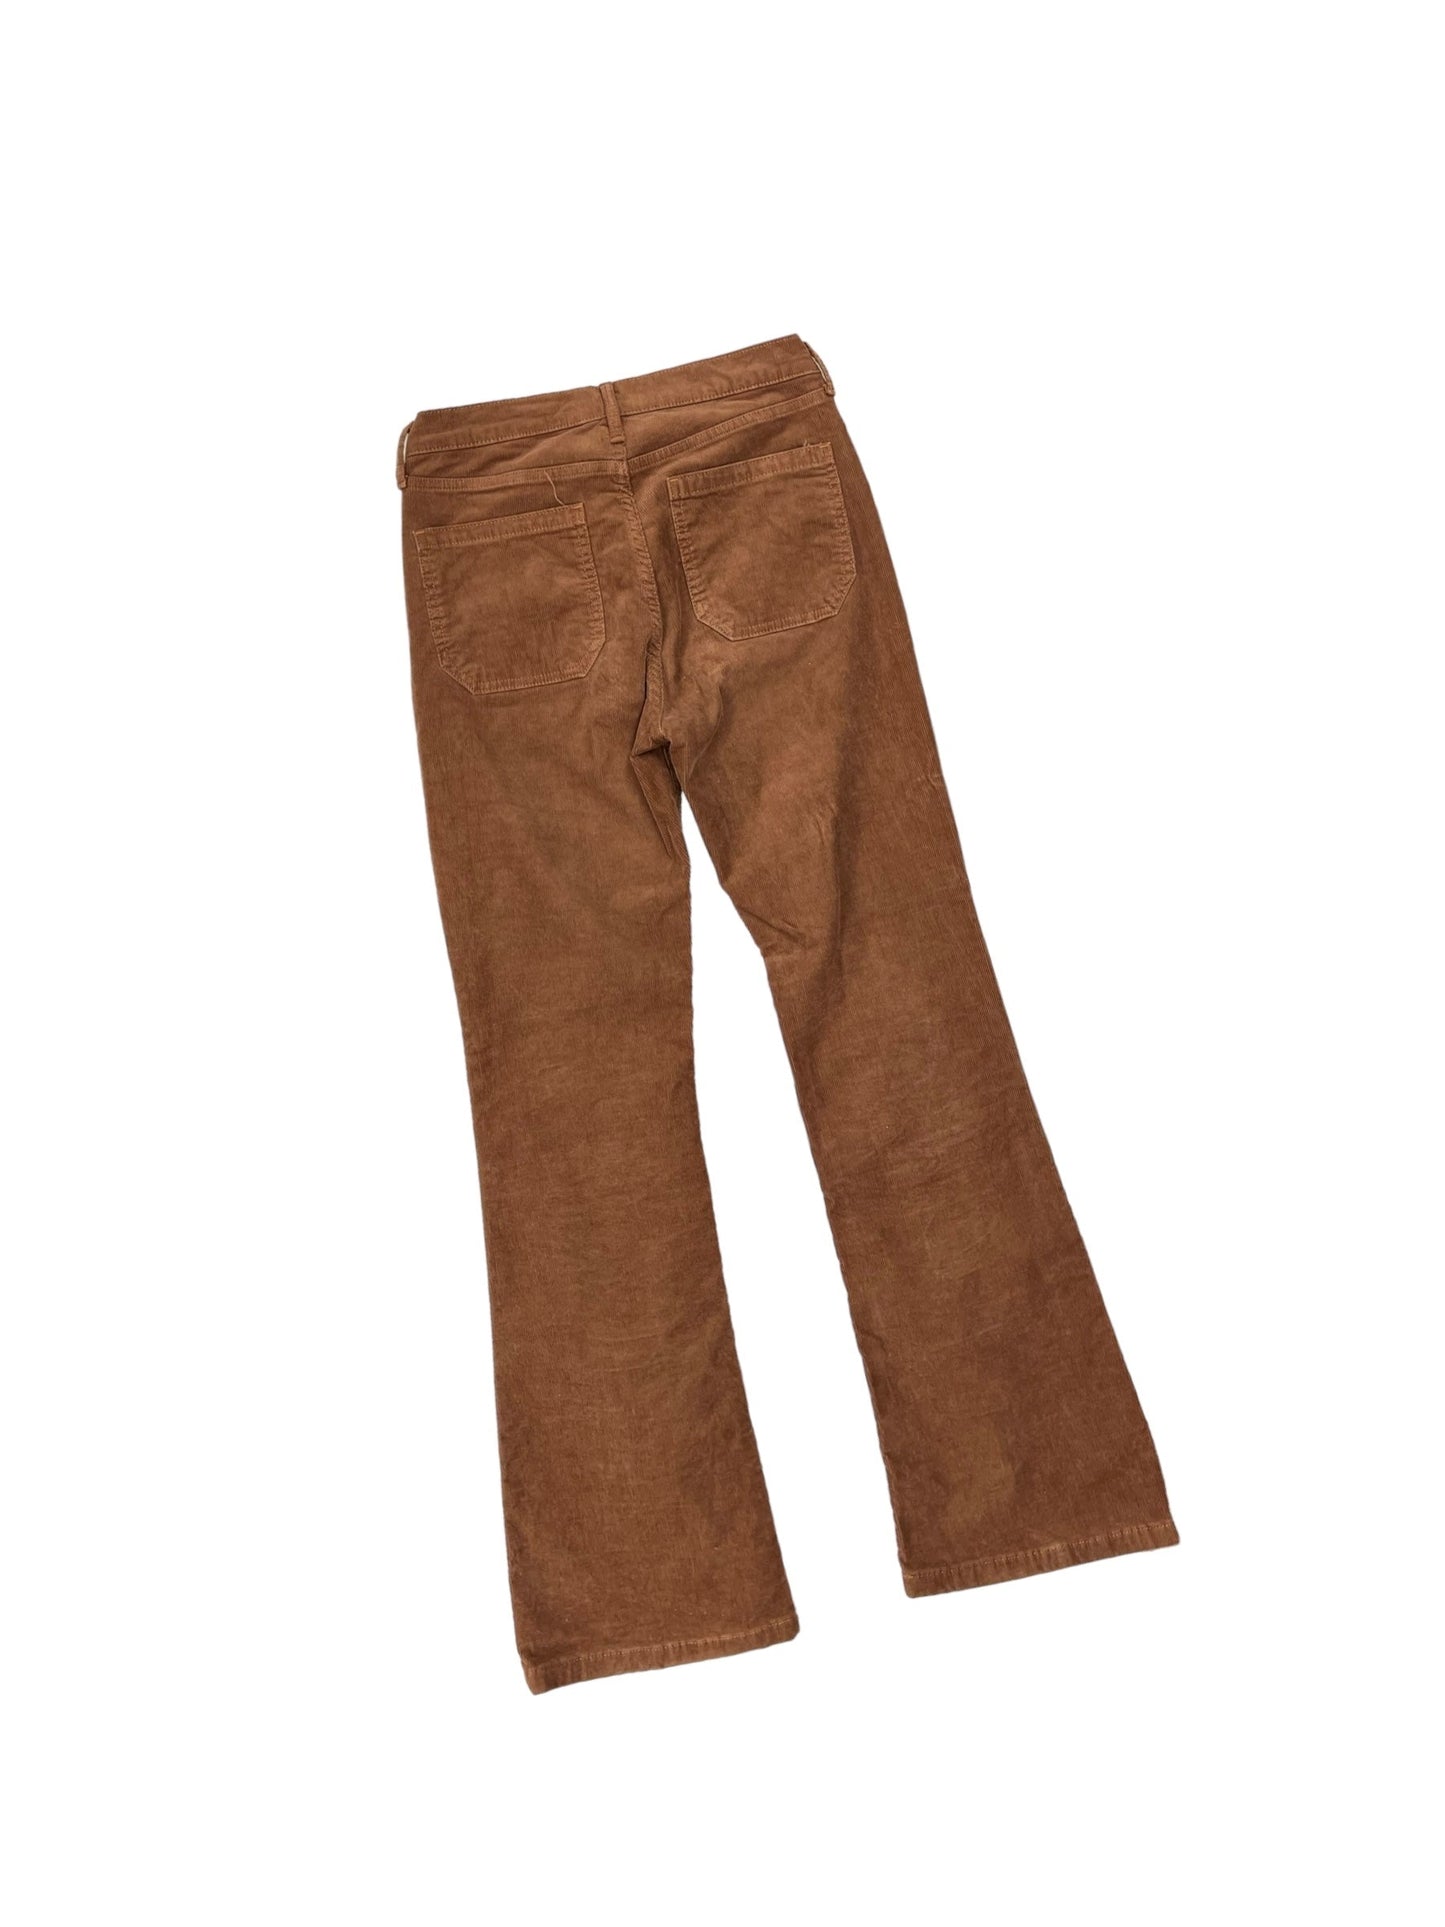 Pants Corduroy By Gap  Size: 4l